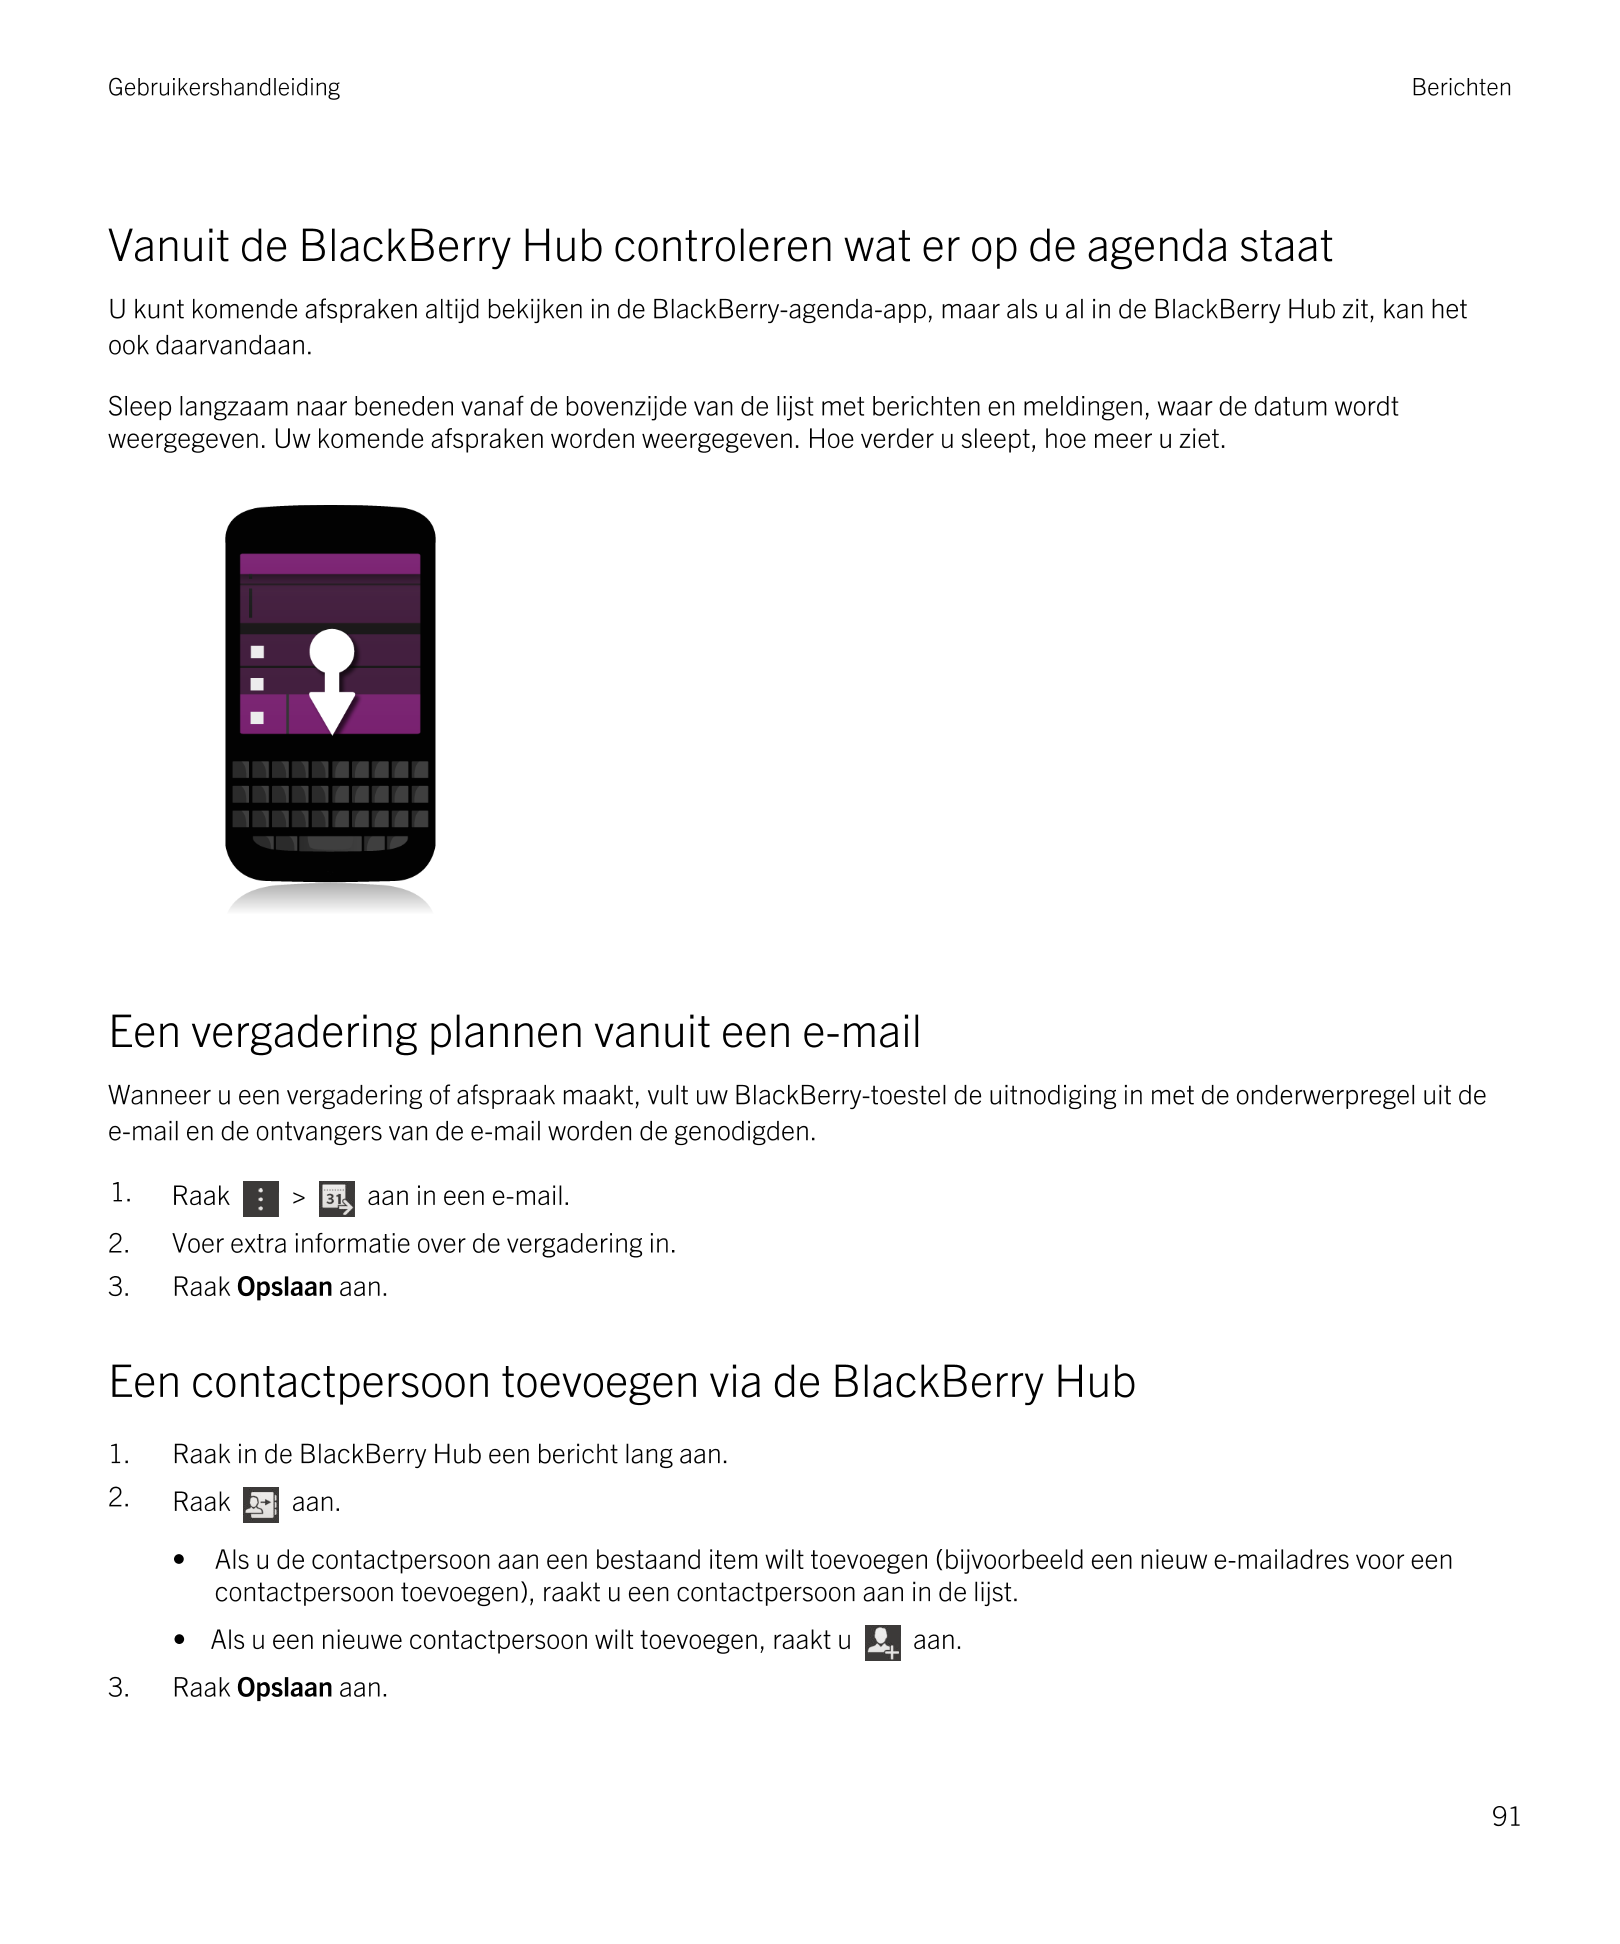 Gebruikershandleiding Berichten
Vanuit de  BlackBerry Hub controleren wat er op de agenda staat
U kunt komende afspraken altijd 